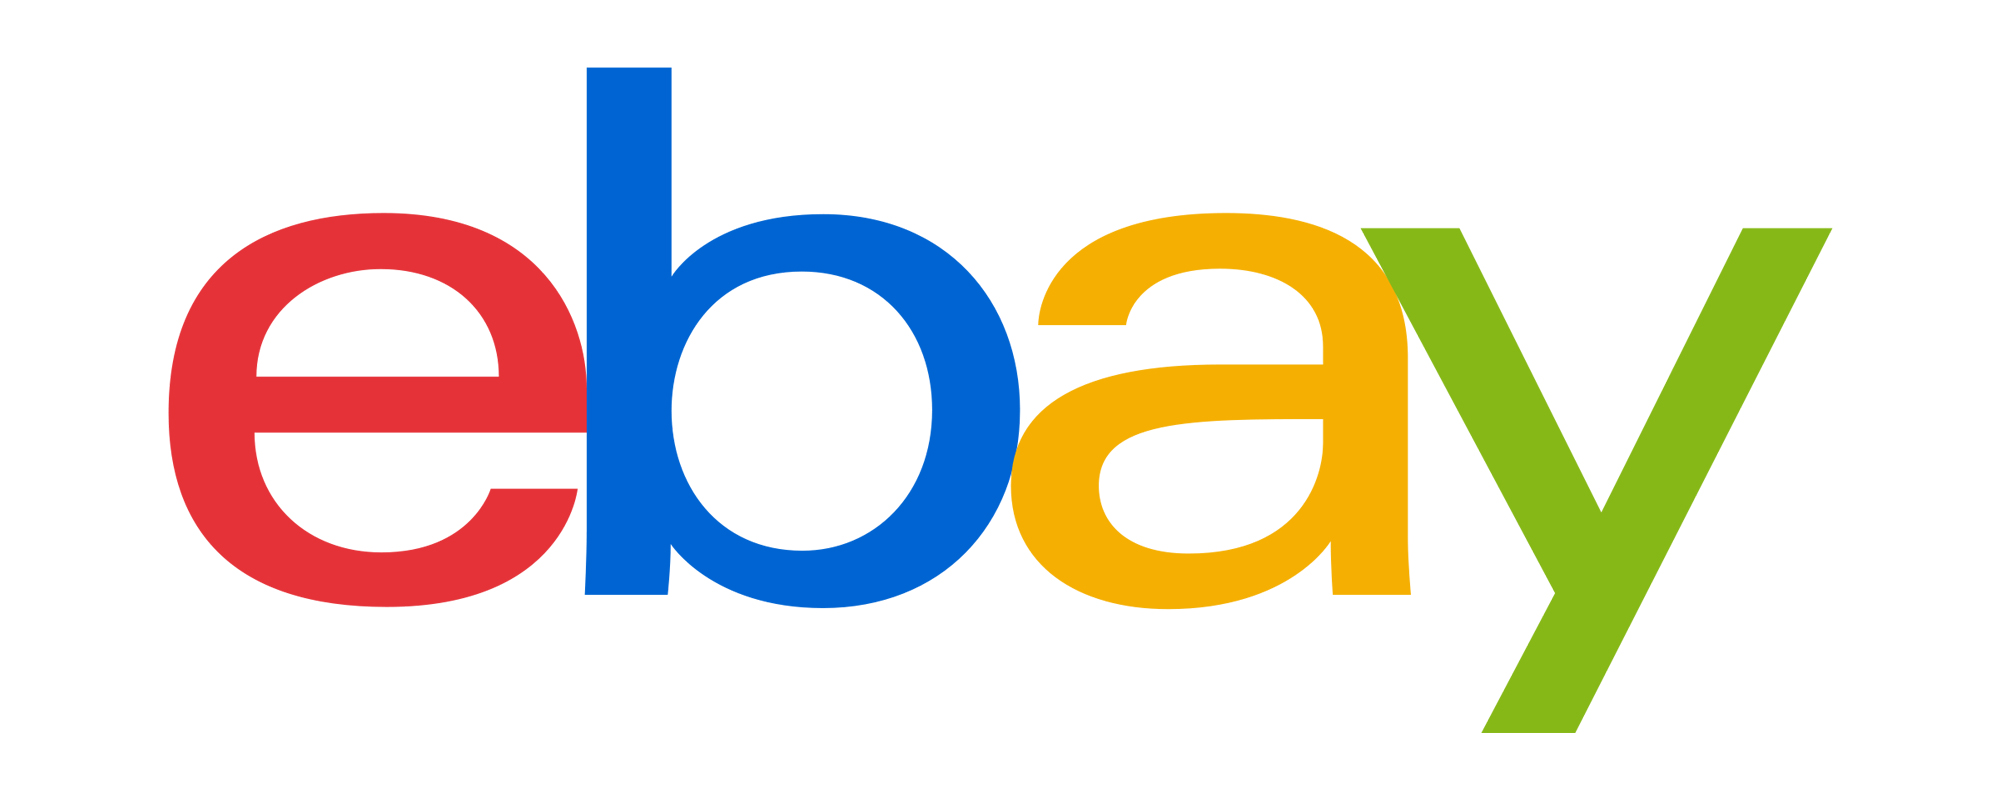 eBay Store - 1000 Feedback Milestone